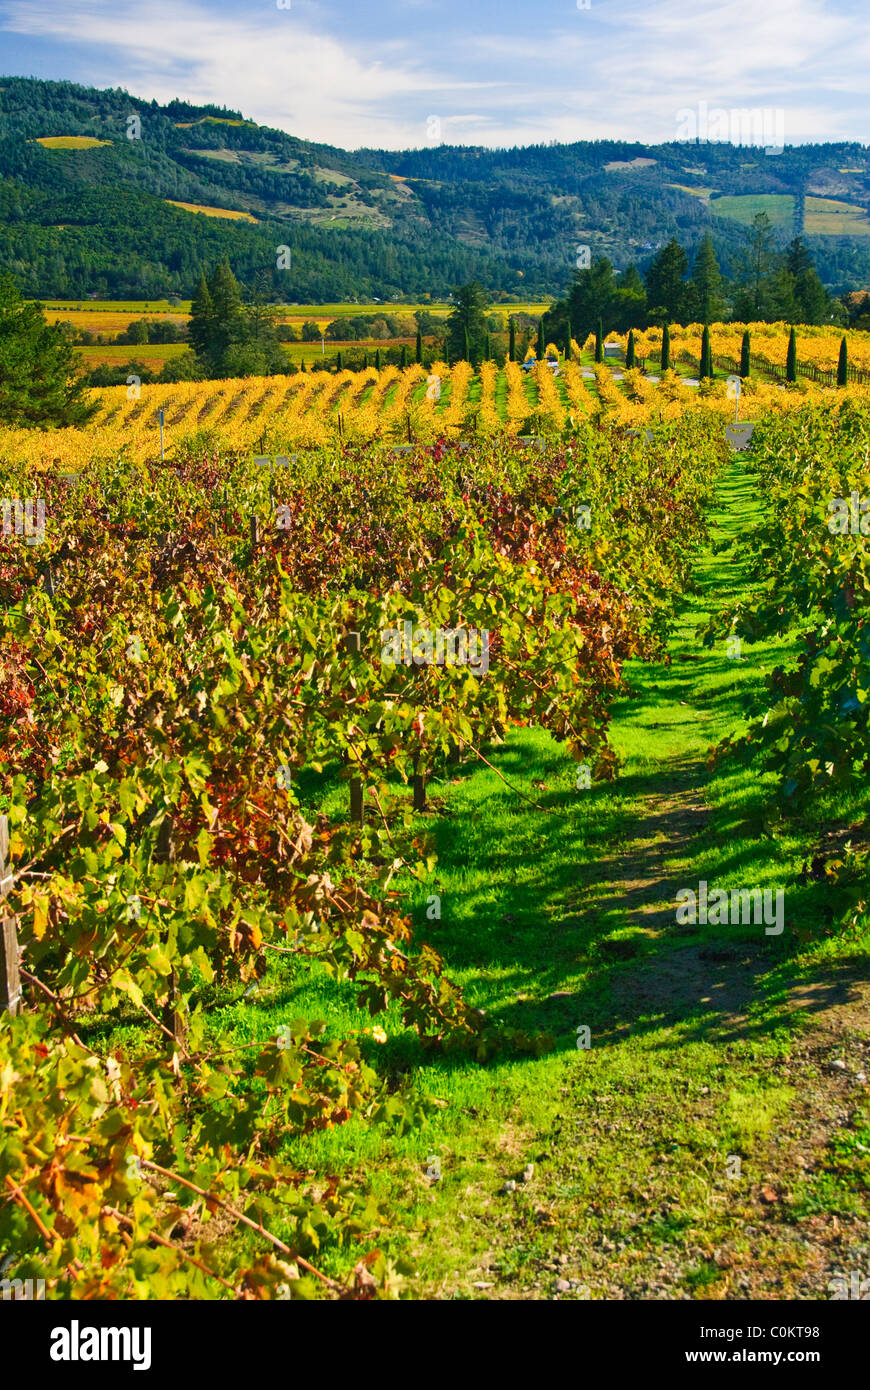 Vineyard near Calistoga, Napa Valley, California, USA Stock Photo